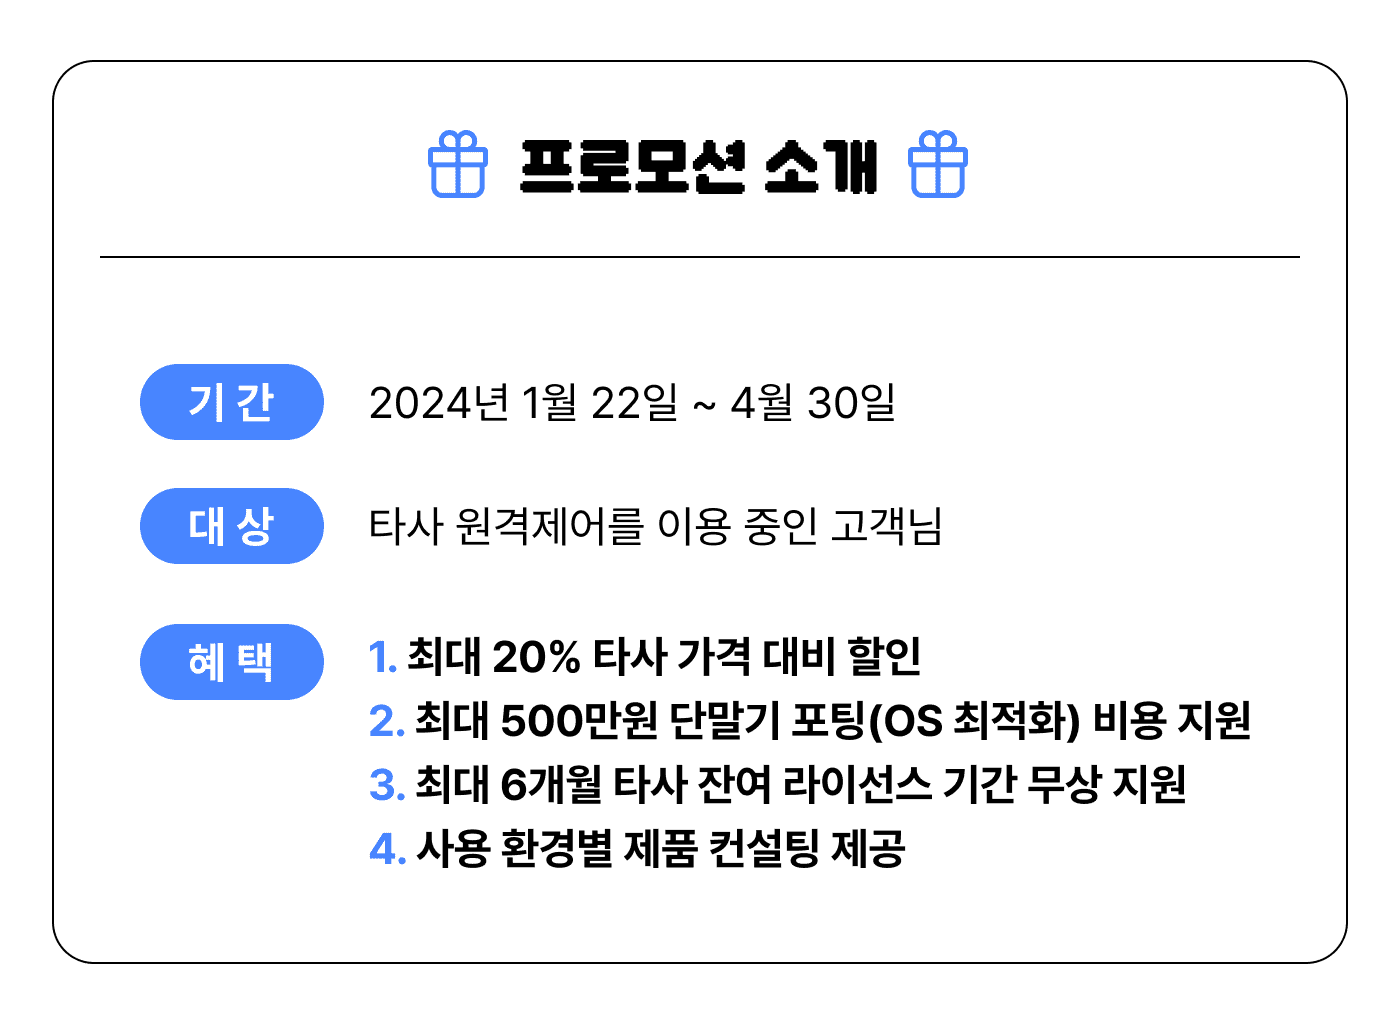 리모트뷰 할인 프로모션 소개